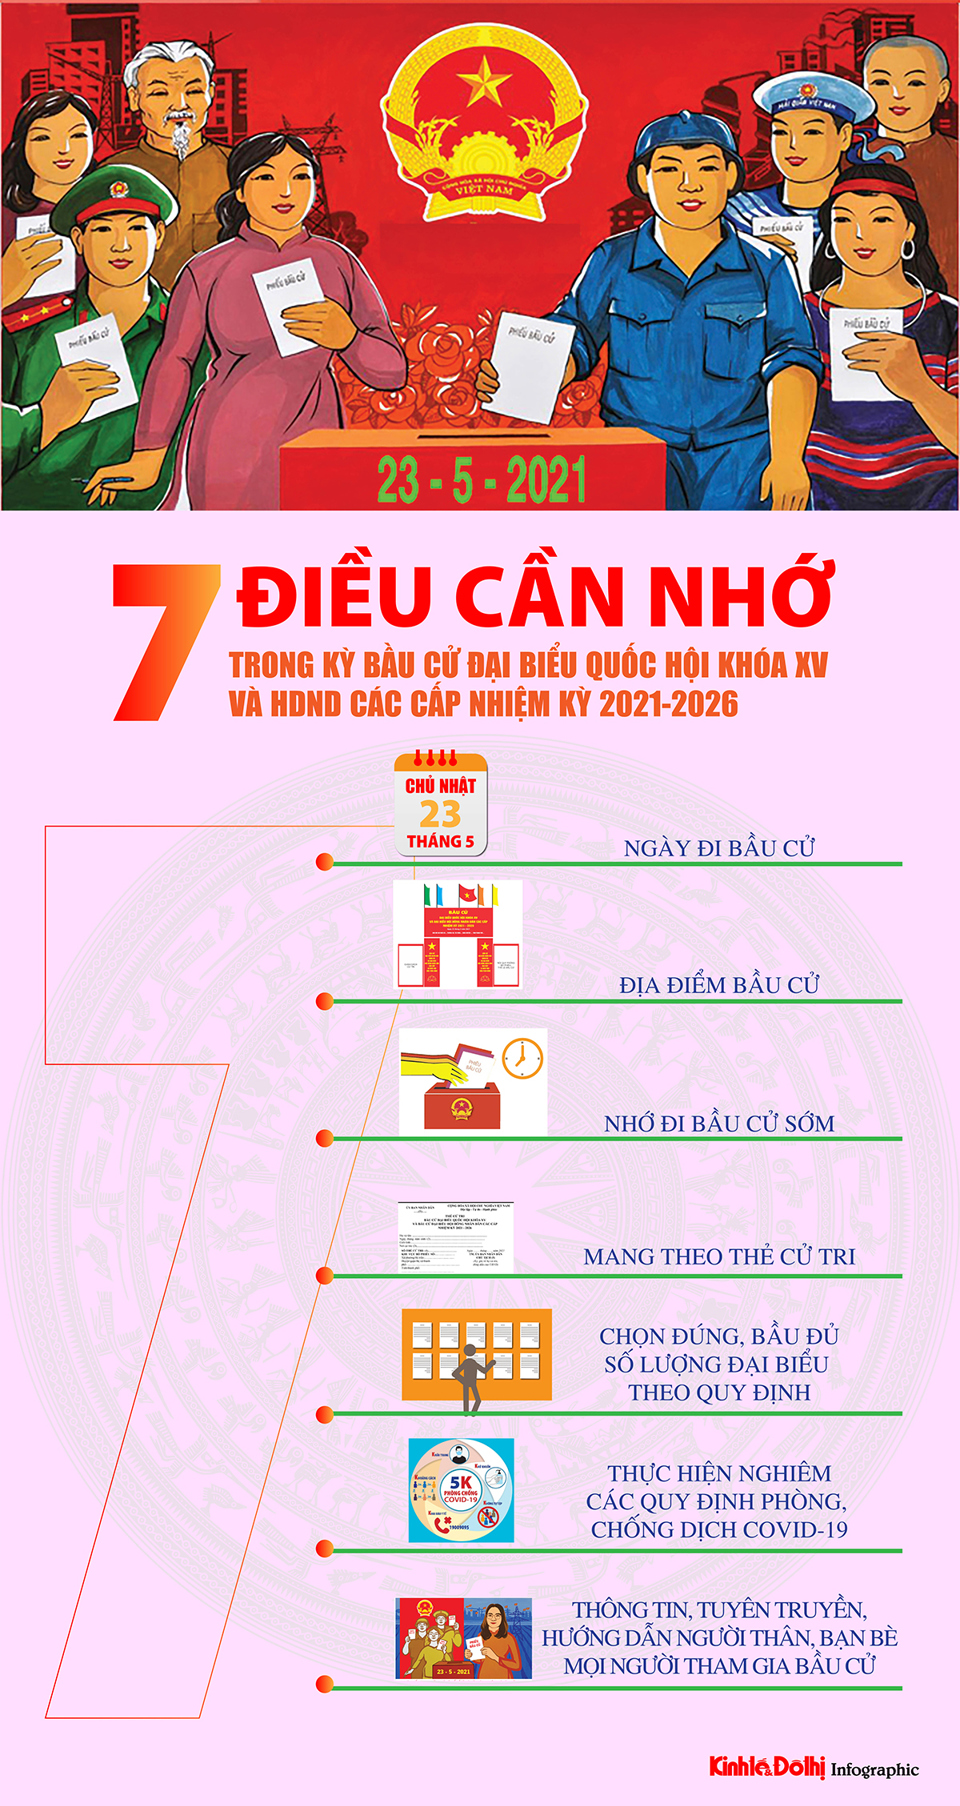 [Infographic] 7 điều cần nhớ trong kỳ bầu cử đại biểu Quốc hội khóa XV và đại biểu HĐND các cấp nhiệm kỳ 2021-2026 - Ảnh 1